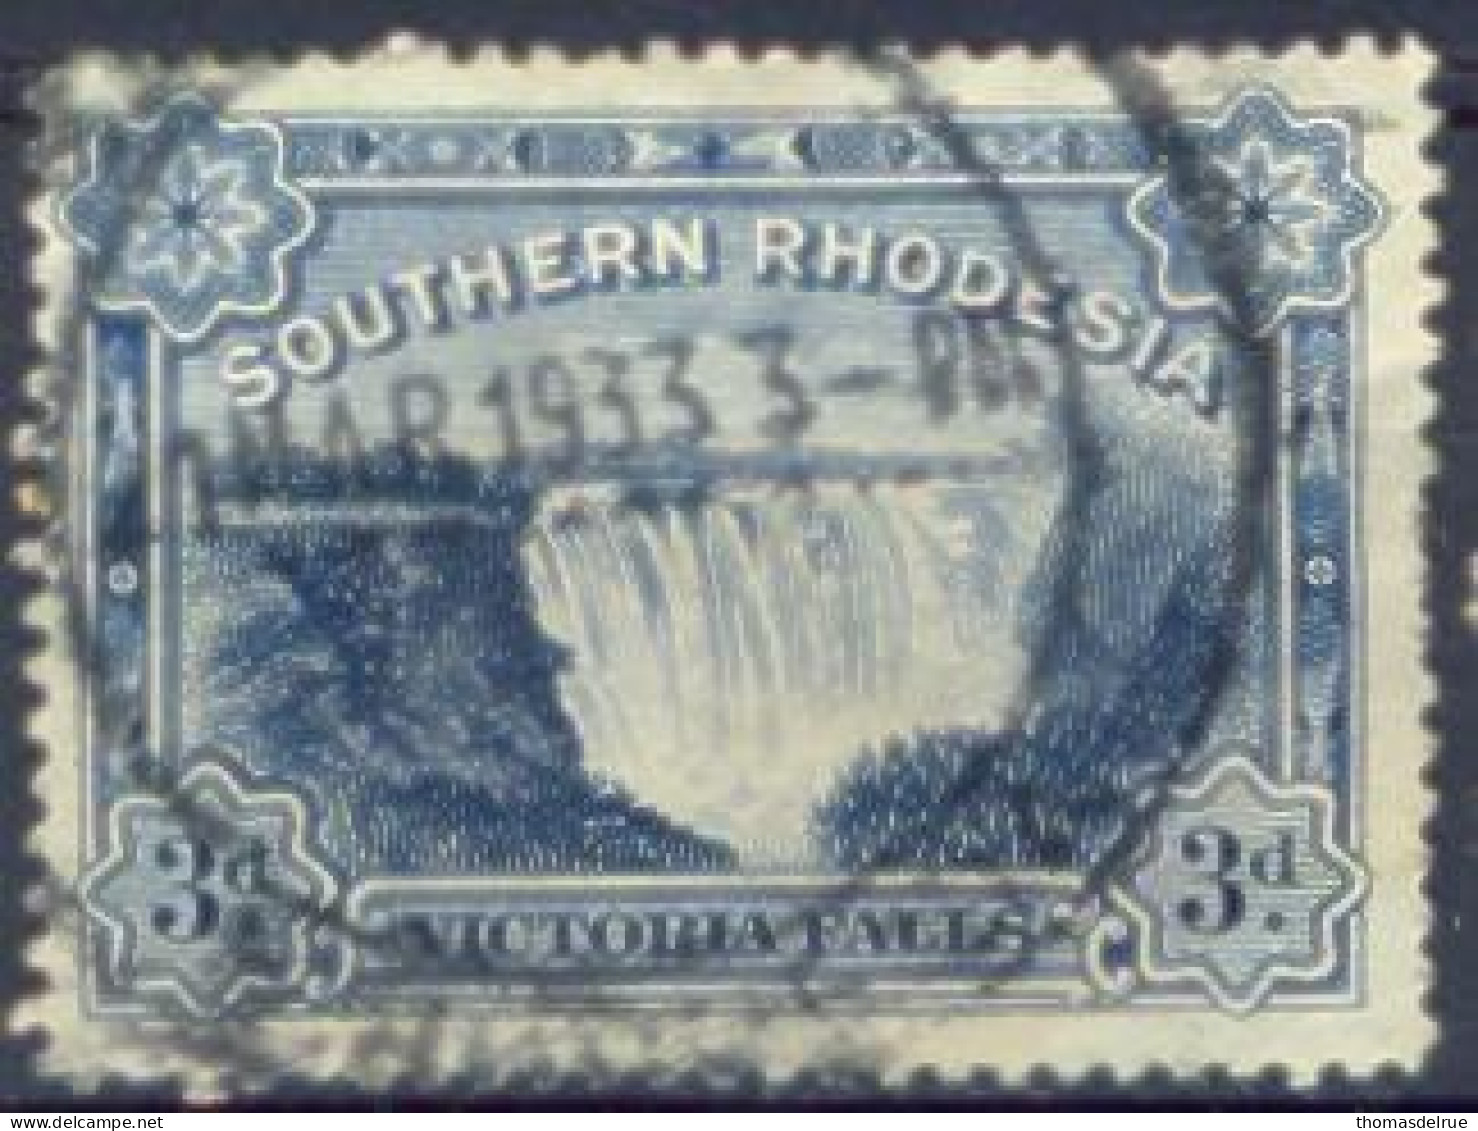 Xe962: Y.&T. SOUTHERN RHODESIA  N° 30 - Southern Rhodesia (...-1964)